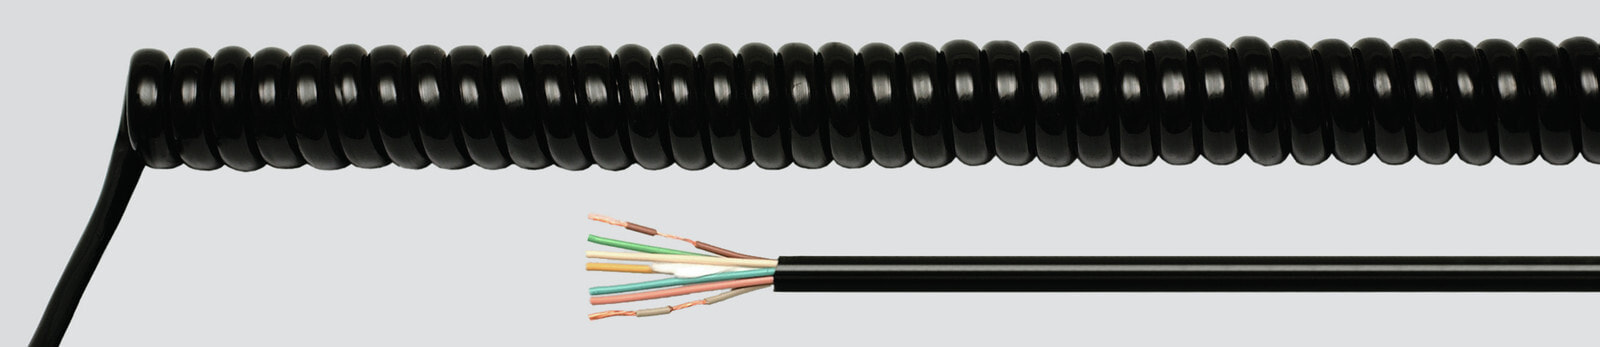 Helukabel 86354 - Low voltage cable - Black - Cooper - 0.75 mm² - 374.4 kg/km - -25 - 70 °C